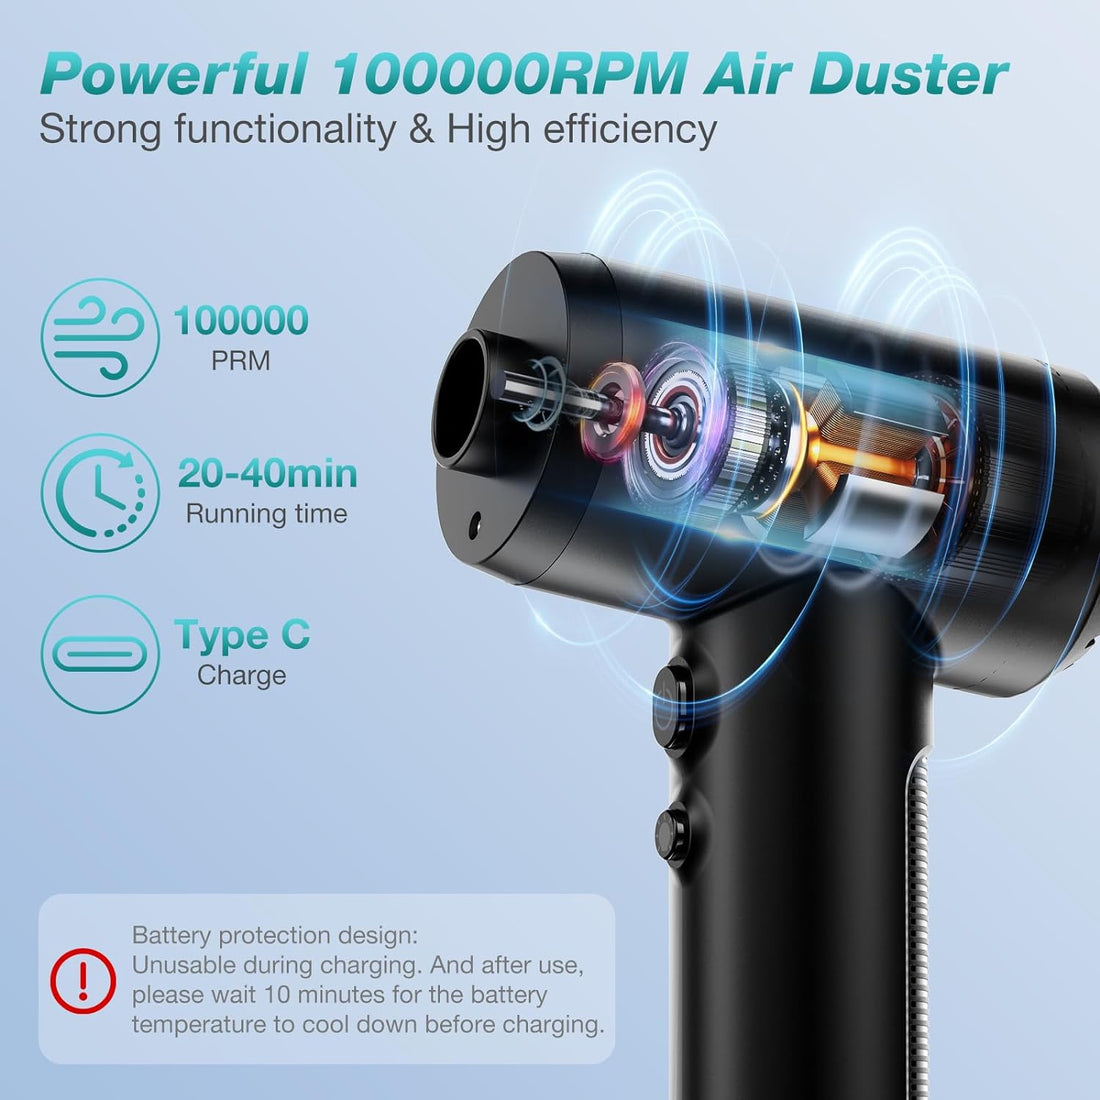 Opinta Air Duster